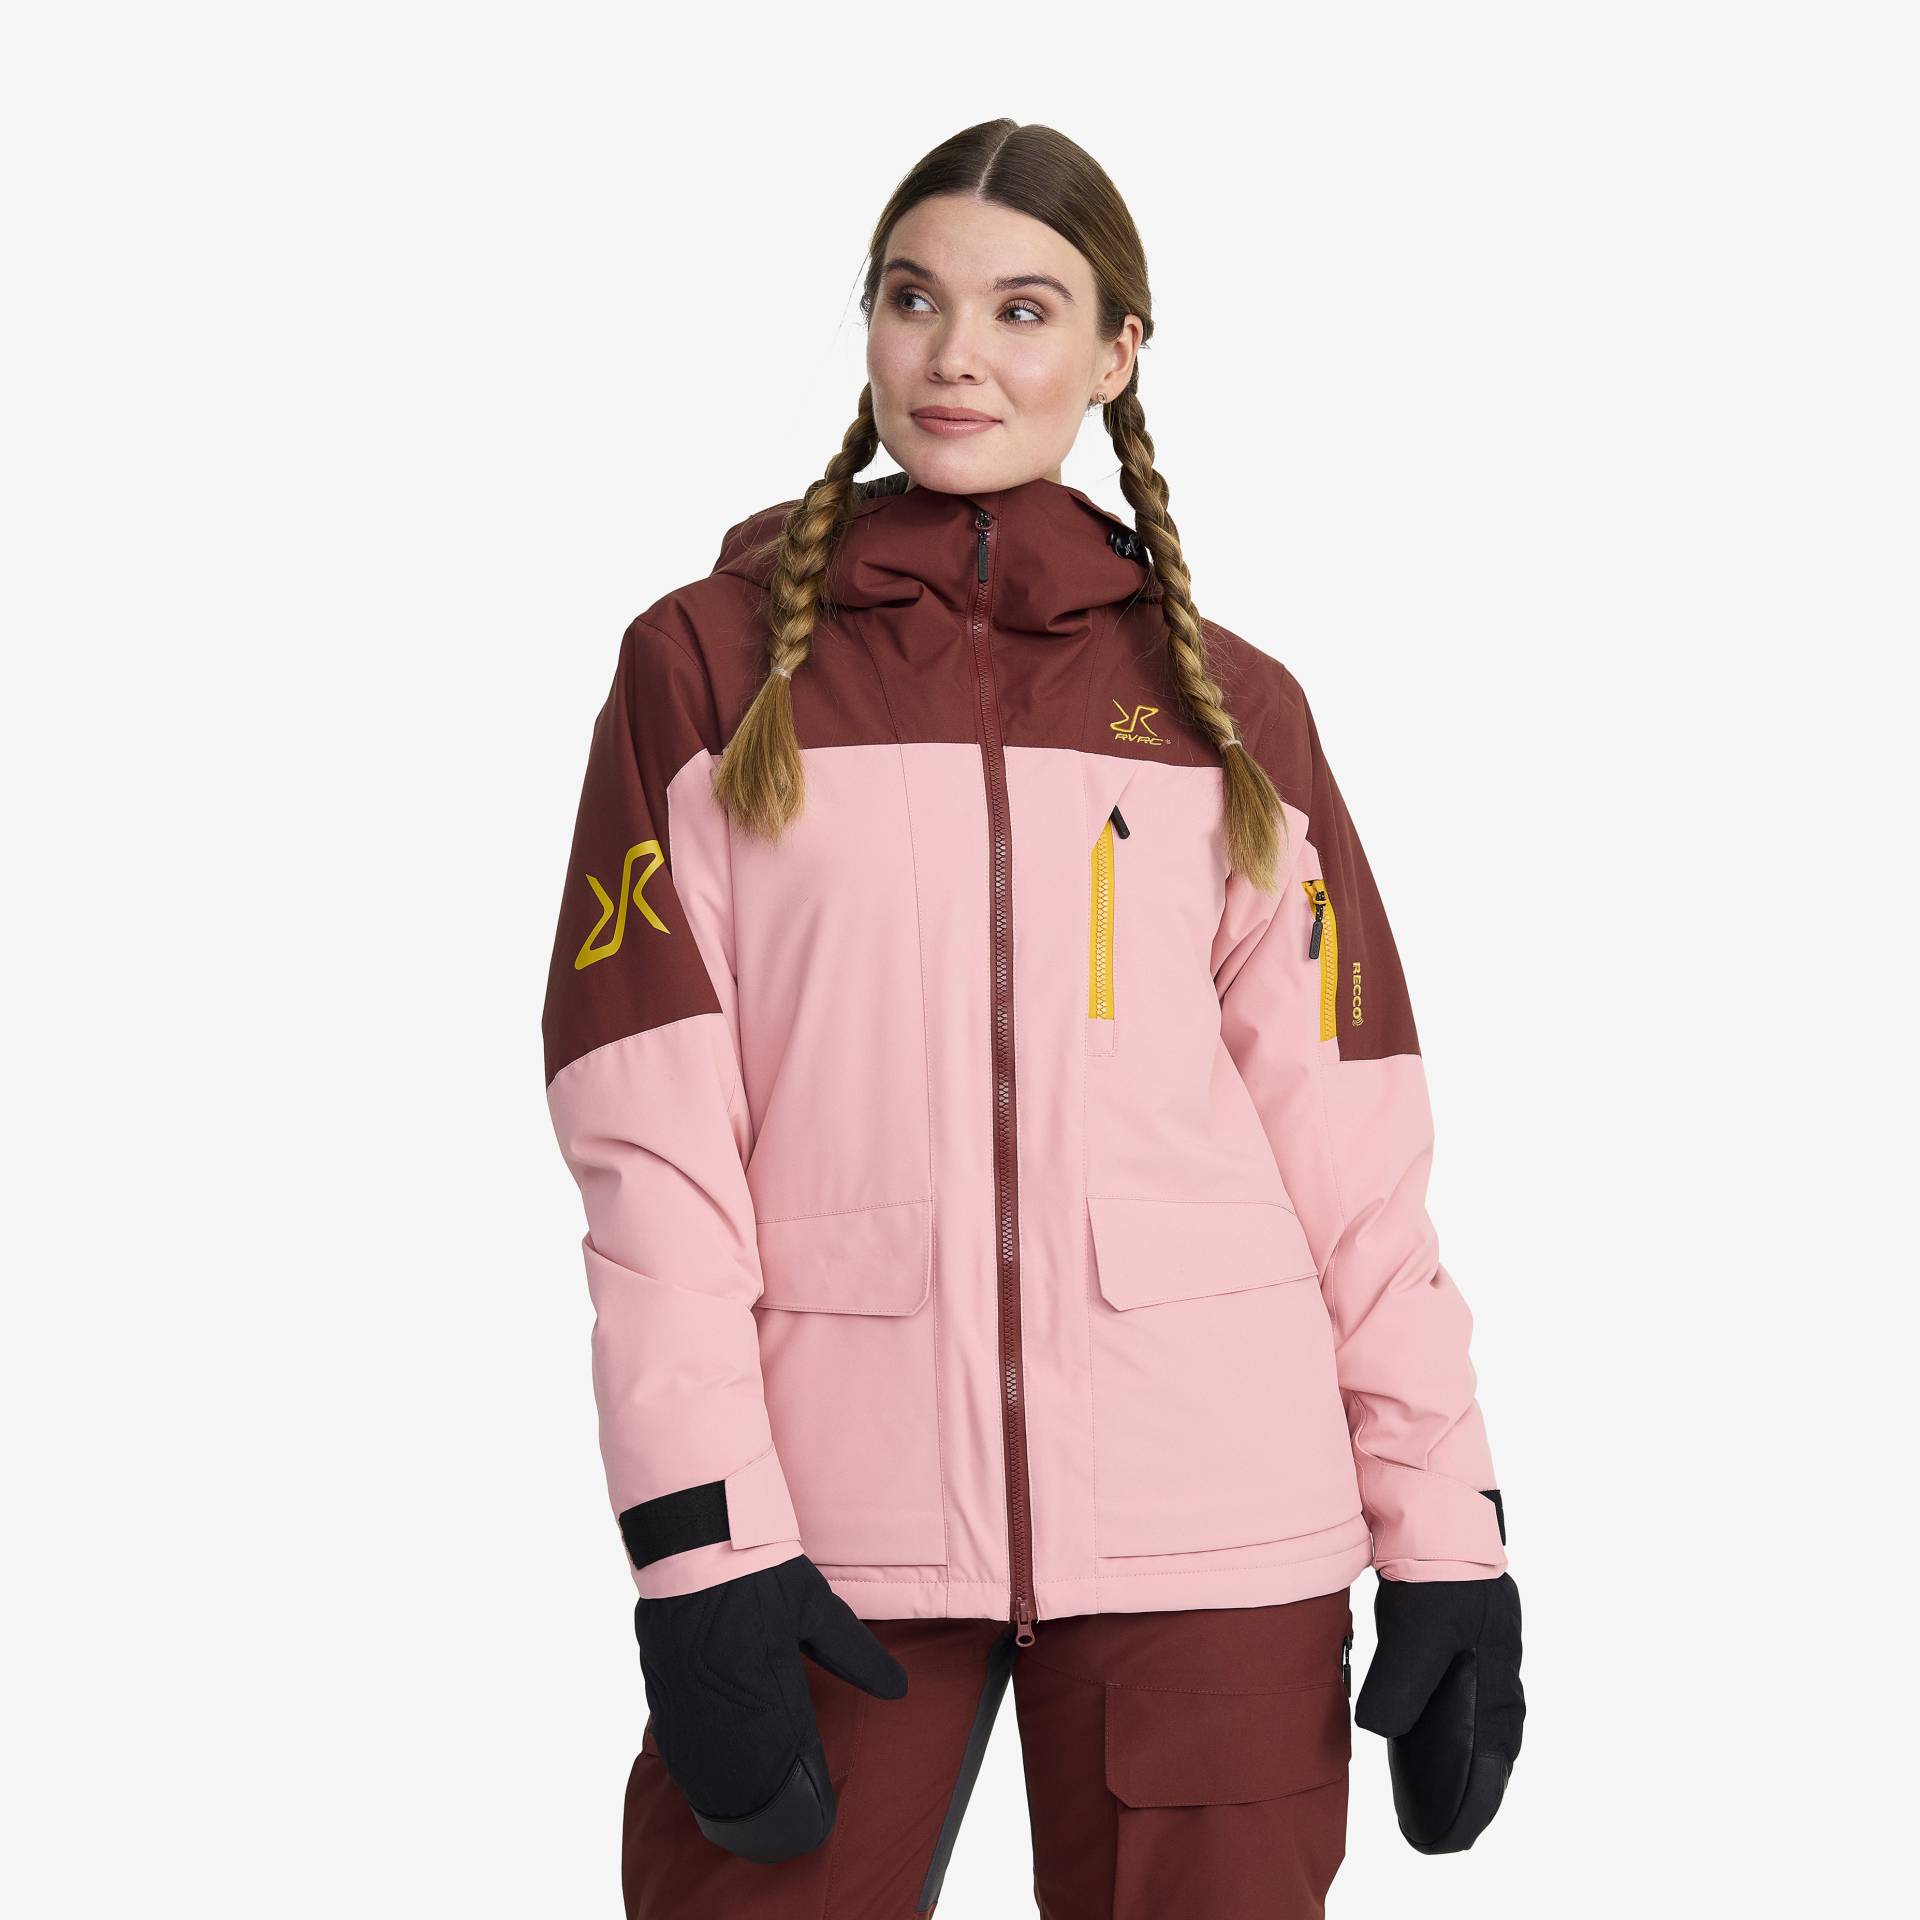 Halo 2L Insulated Ski Jacket Damen Blush, Größe:XS - Skijacken von RevolutionRace